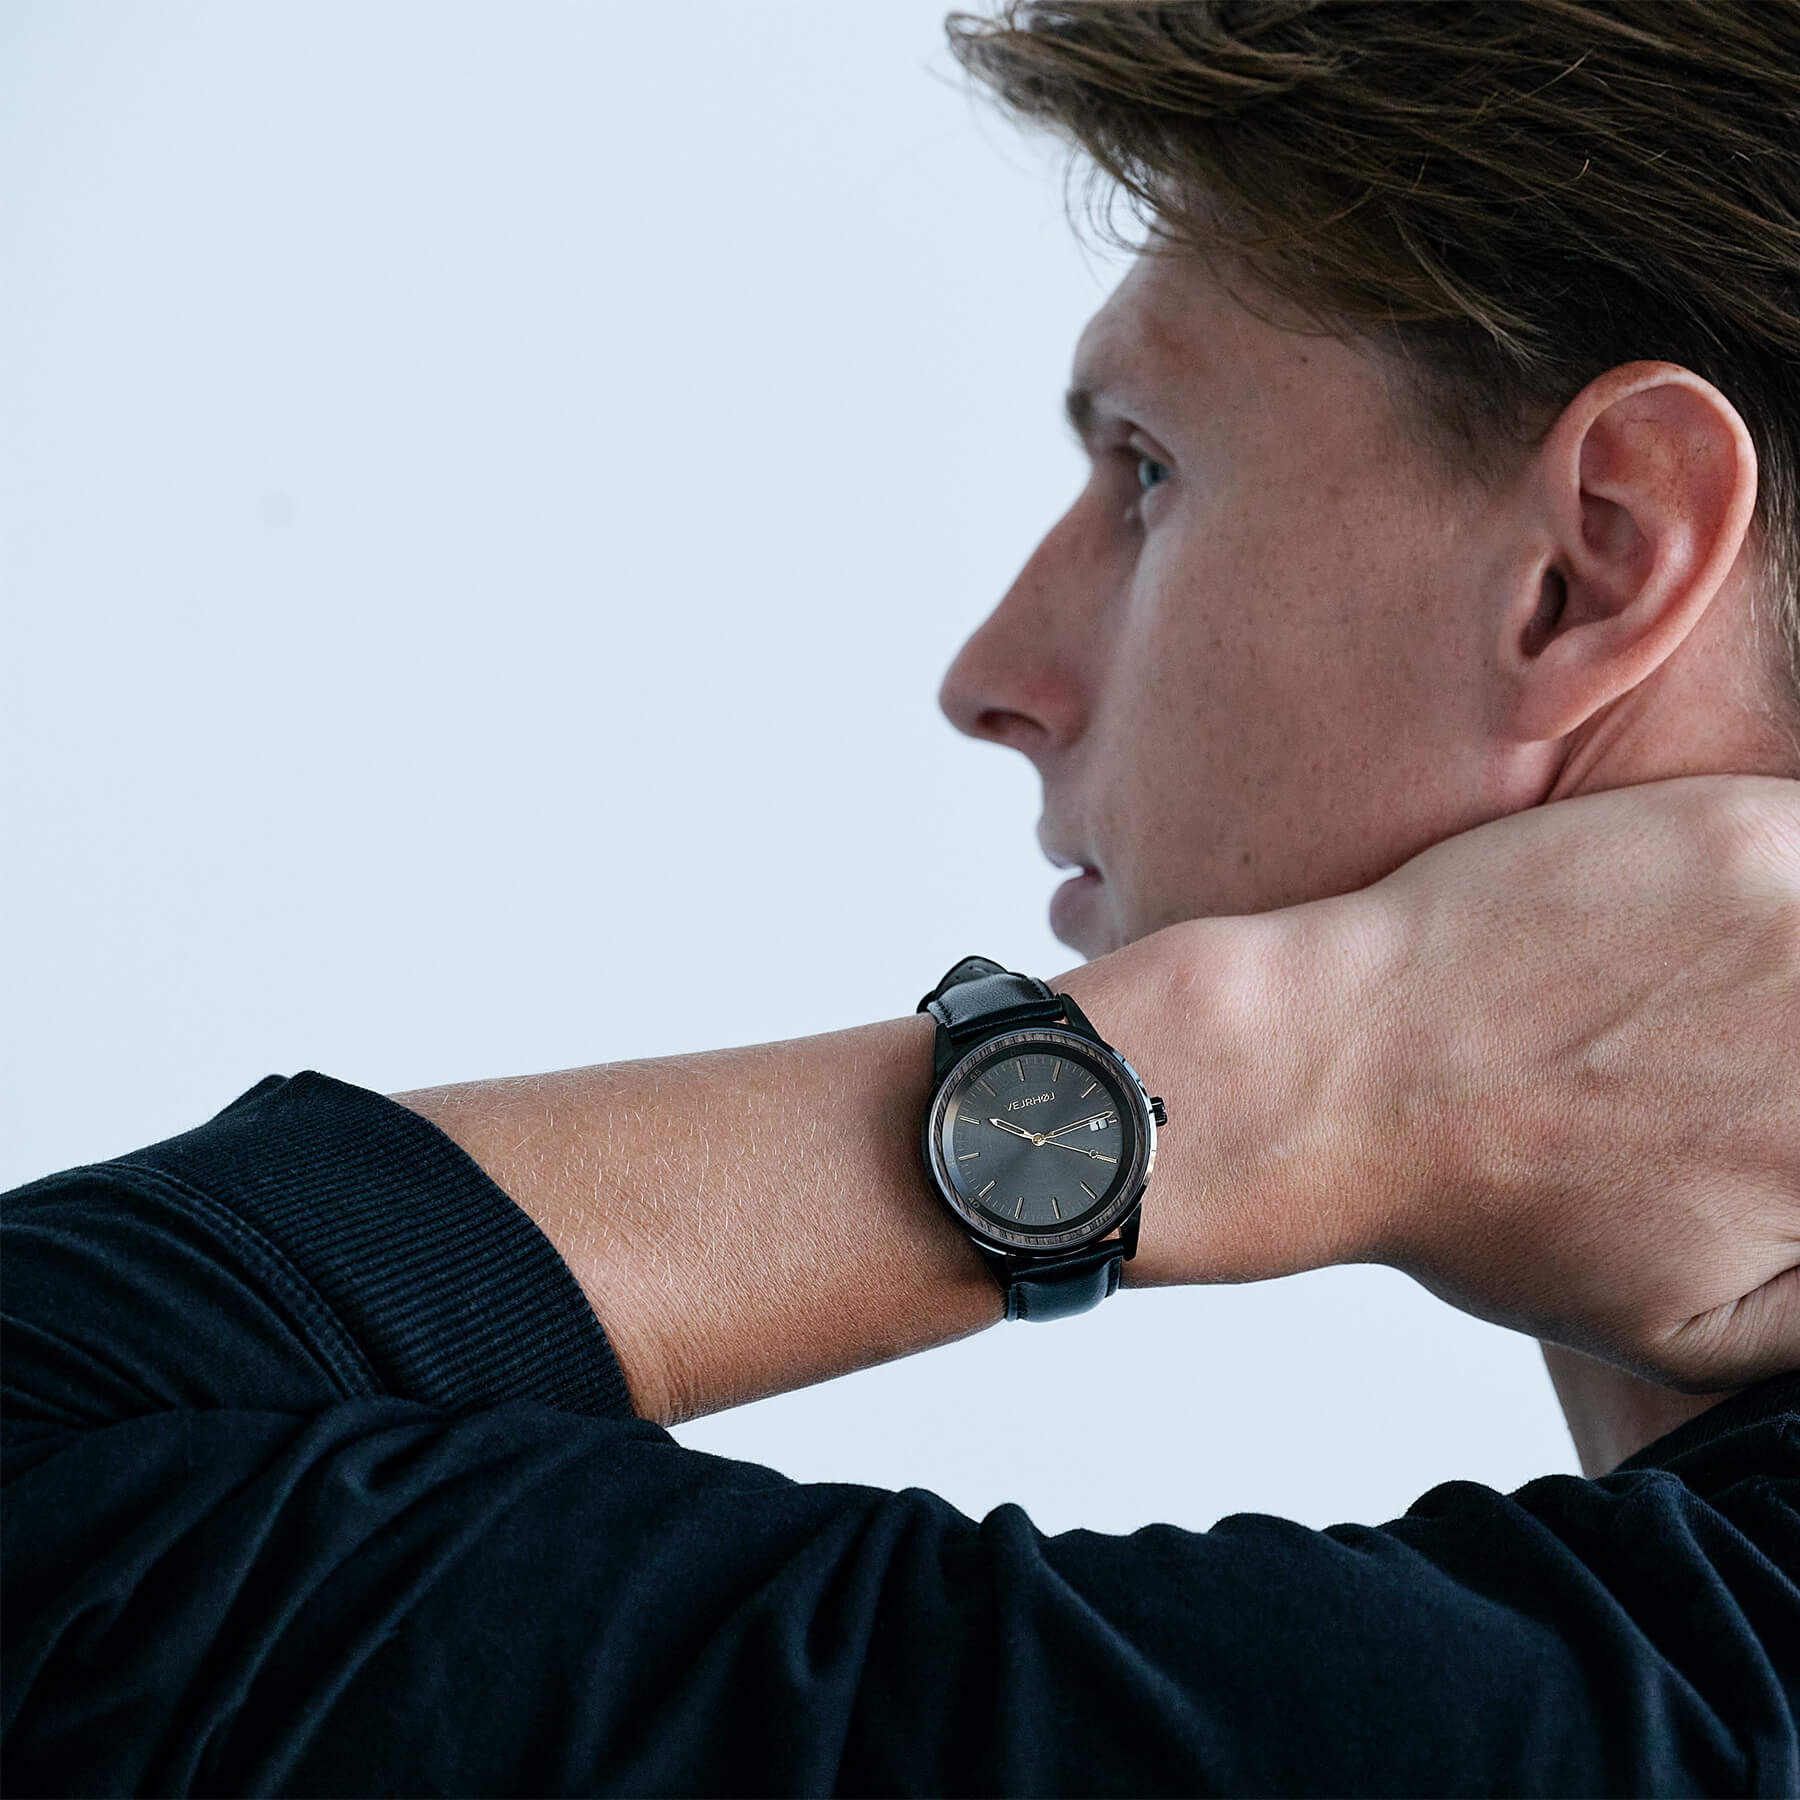 Footballer Kasper Junker wearing the black automatic watch by the VEJRHOJ brand